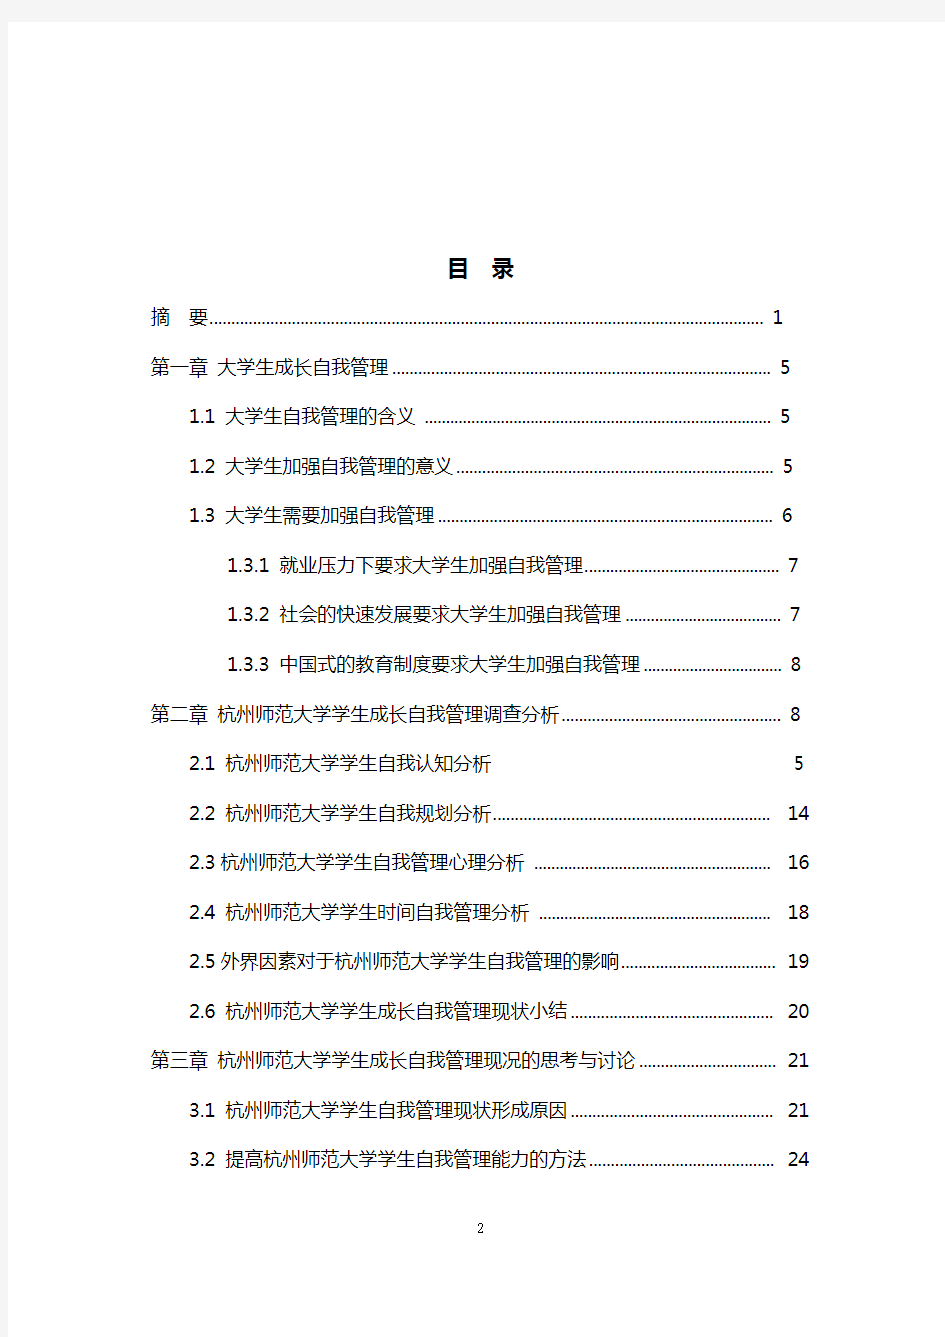 5.杭州师范大学学生成长自我管理现况调研报告